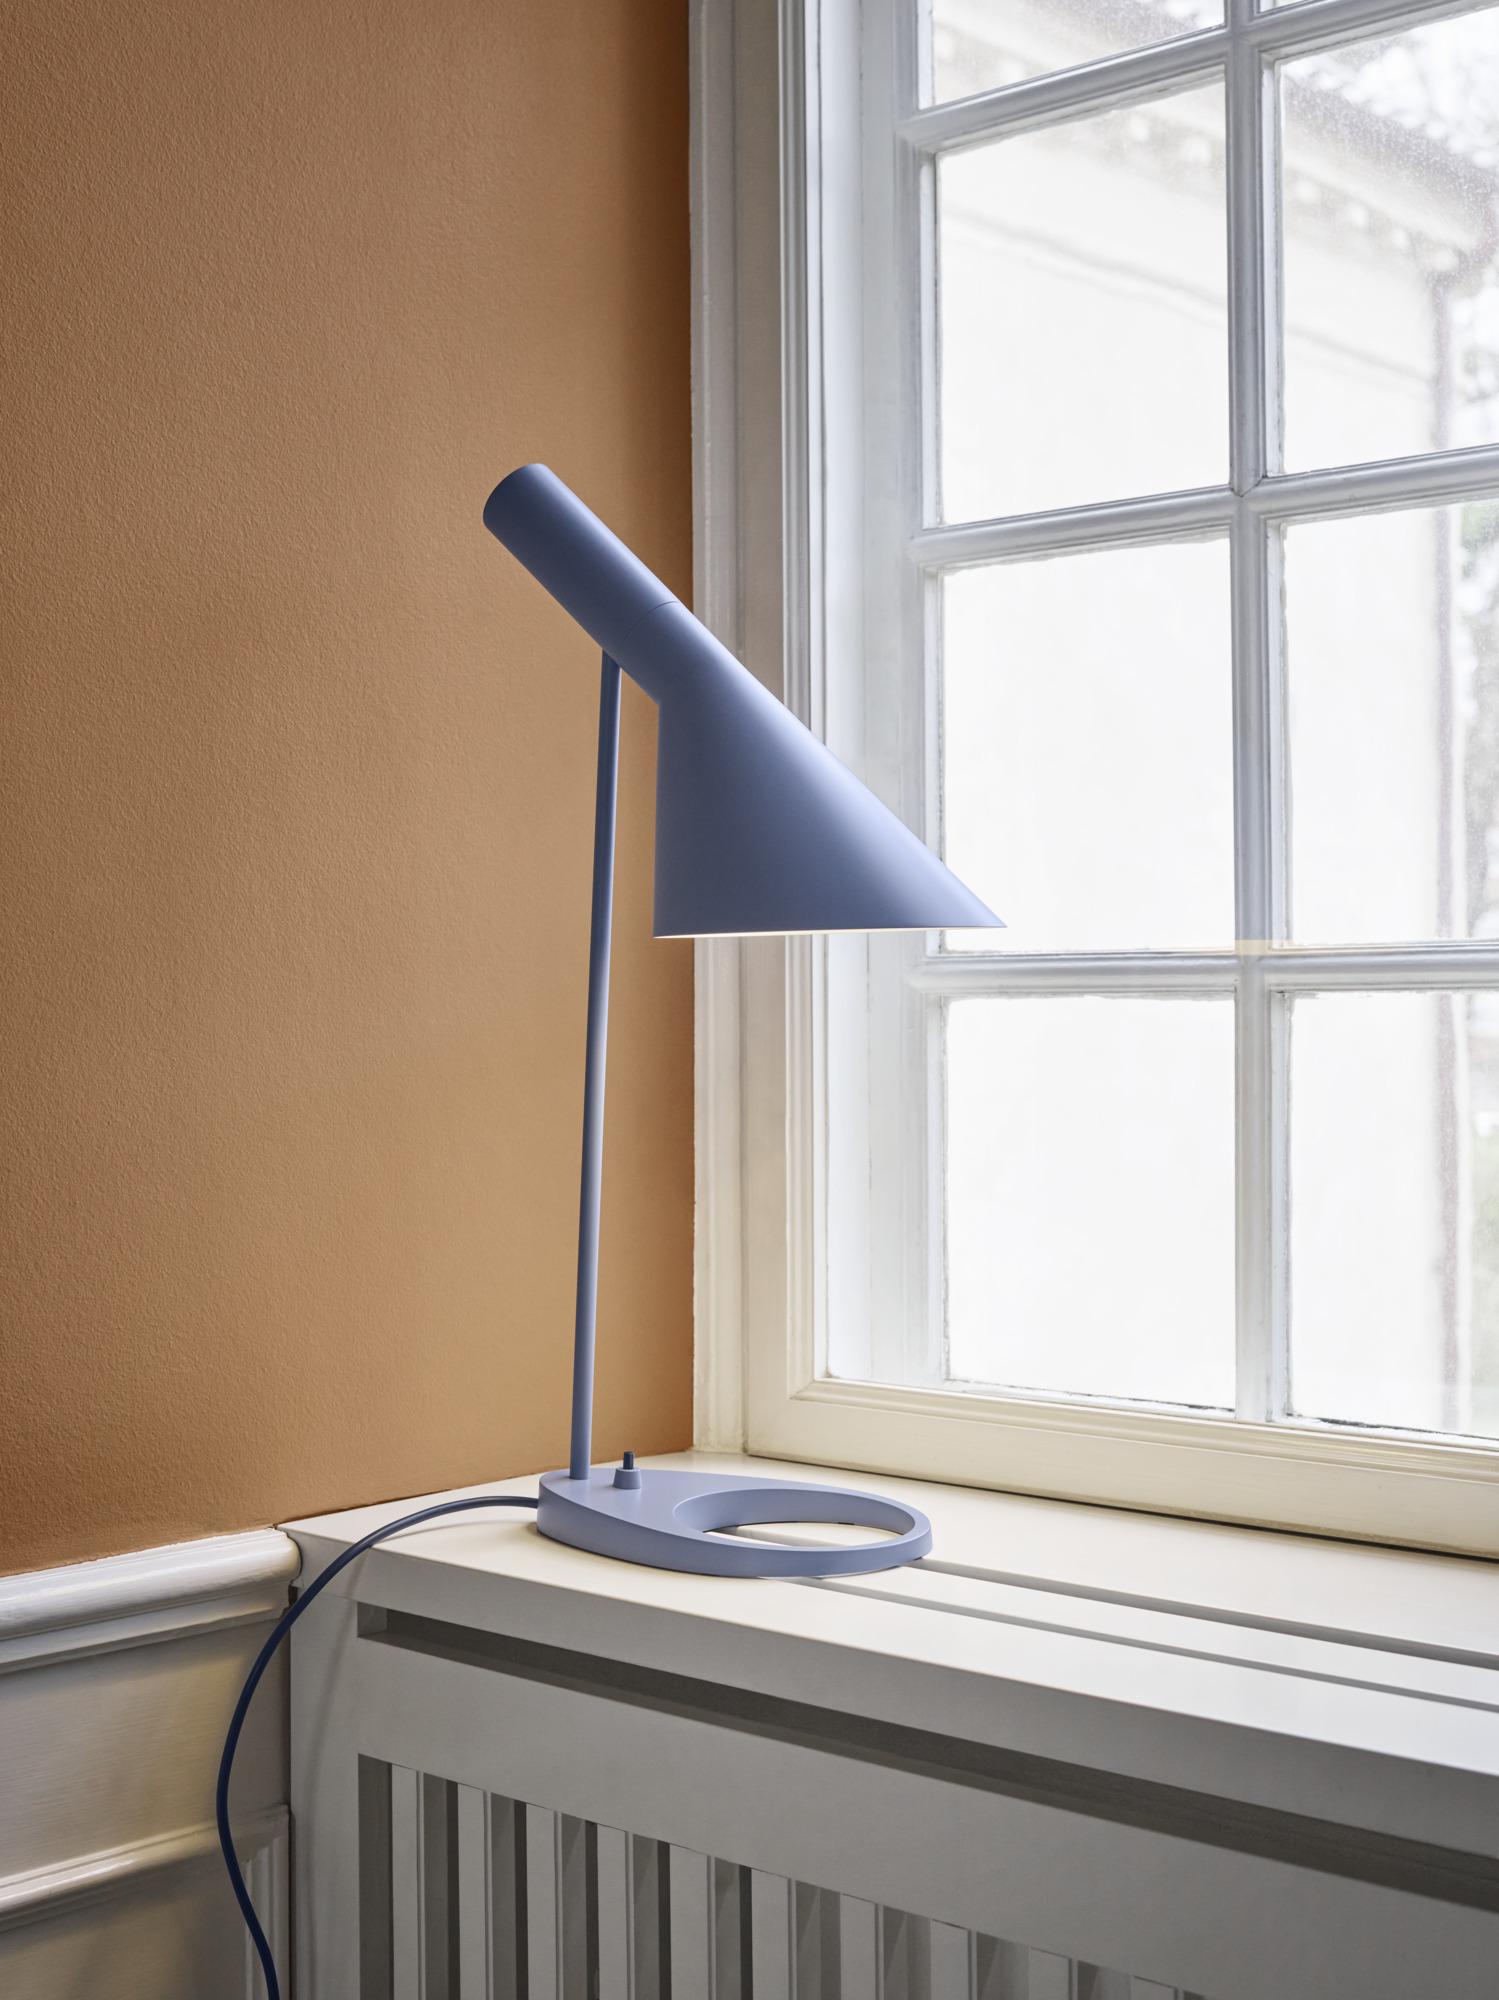 Arne Jacobsen AJ Table Lamp in Warm Grey for Louis Poulsen For Sale 2